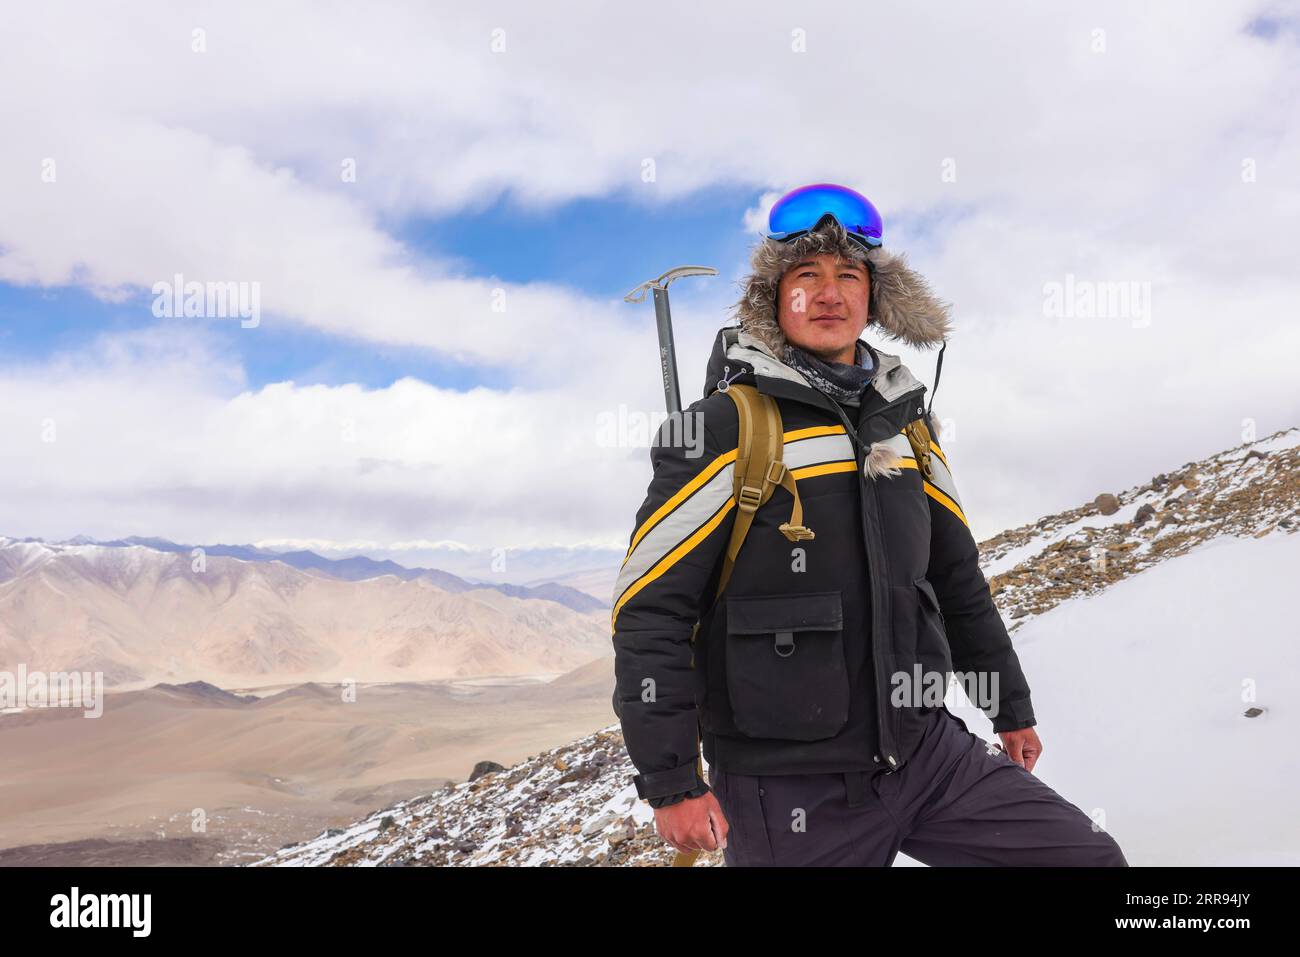 210528 -- URUMQI, 28 maggio 2021 -- foto scattata il 15 maggio 2021 mostra un ritratto di Bikmirza Turdil sulla Muztagh Ata nella regione autonoma di Xinjiang Uygur della Cina nordoccidentale. Bikmirza, un allevatore di 24 anni, nacque e crebbe ai piedi del Muztagh Ata, un picco con un'altitudine di oltre 7.500 metri, nella regione autonoma di Uygur dello Xinjiang Pamir in Cina. Ha iniziato a lavorare come guida aiutando gli scalatori a trasportare attrezzature e provviste all'età di 18 anni. Scalare il Muztagh Ata, un simbolo di coraggio, è anche considerato come la cerimonia di raggiungimento della maggiore età per i giovani locali. Nel Subax Village Foto Stock